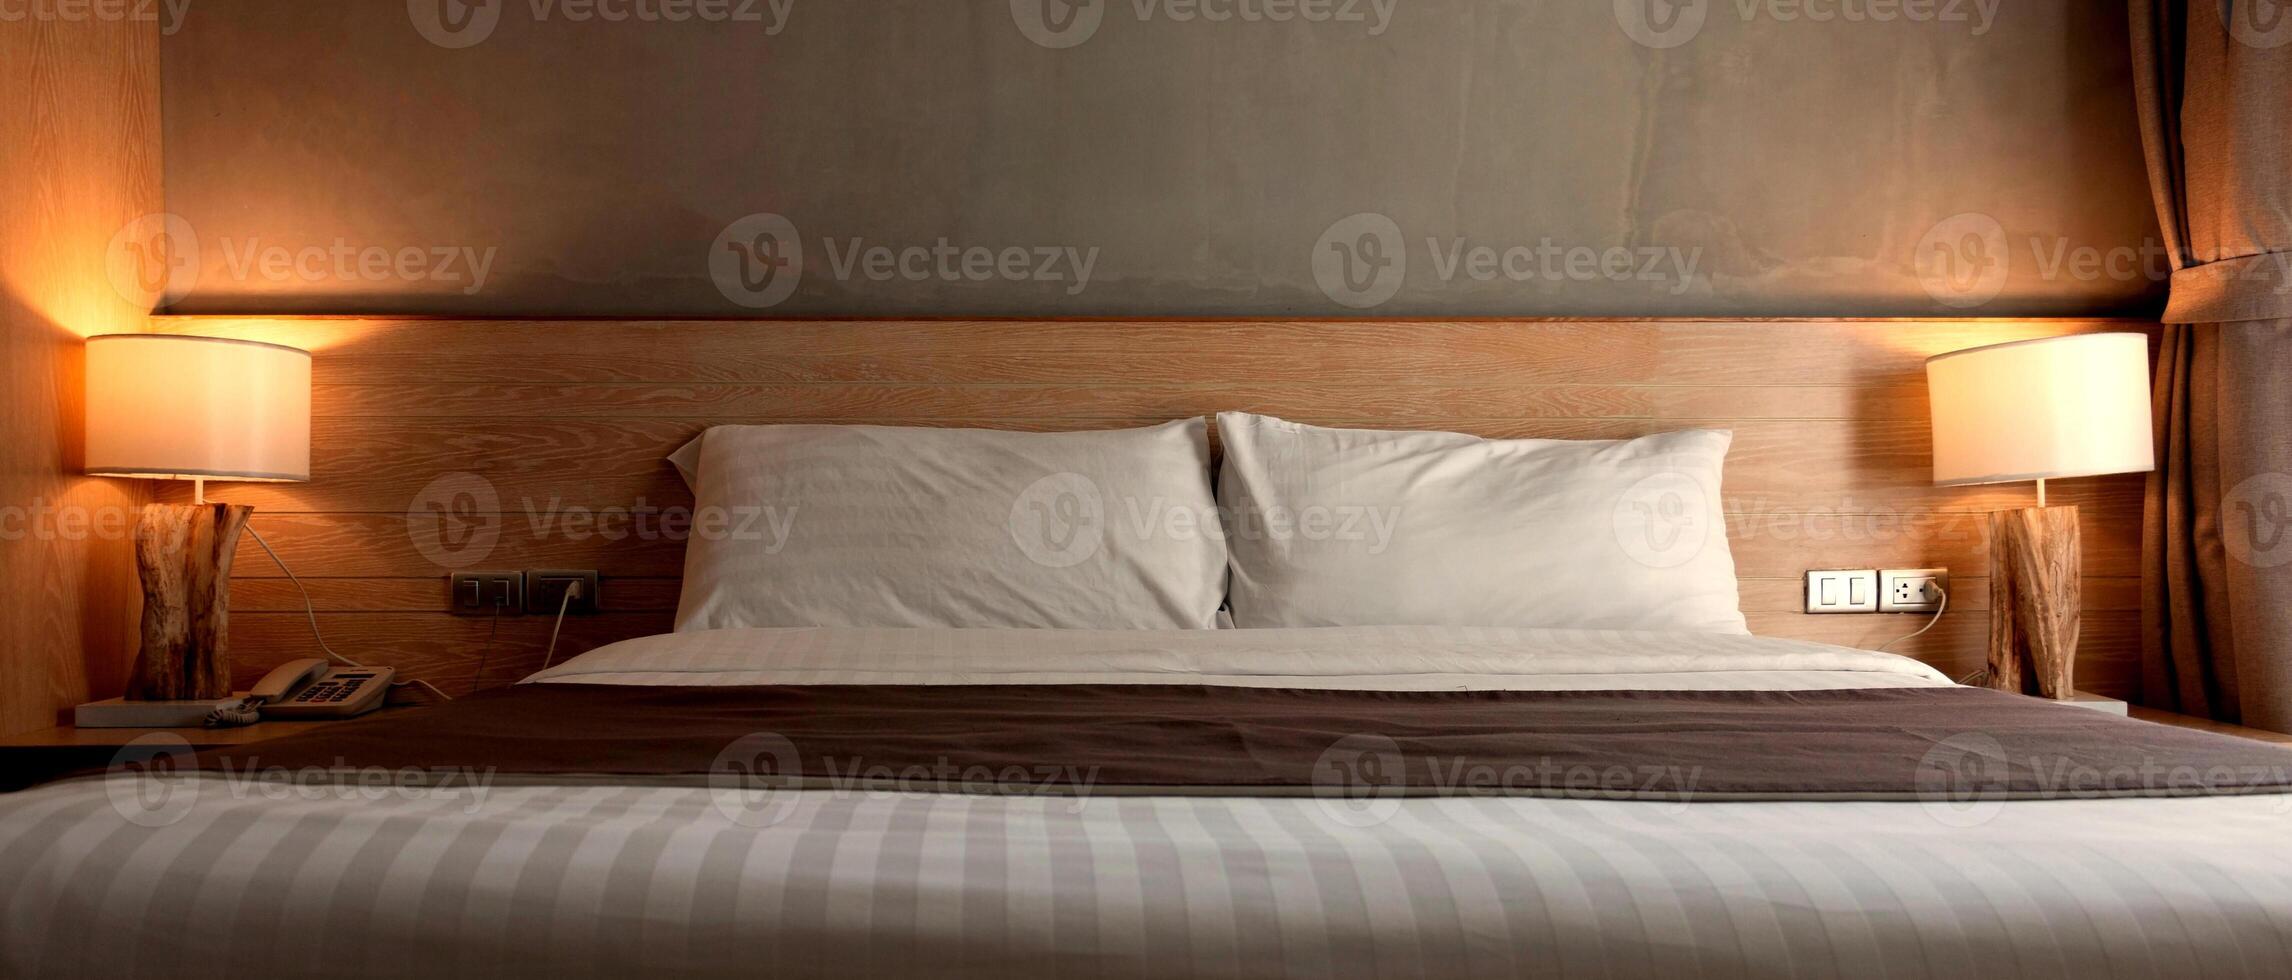 branco almofadas em cama com luminária luz às noite foto